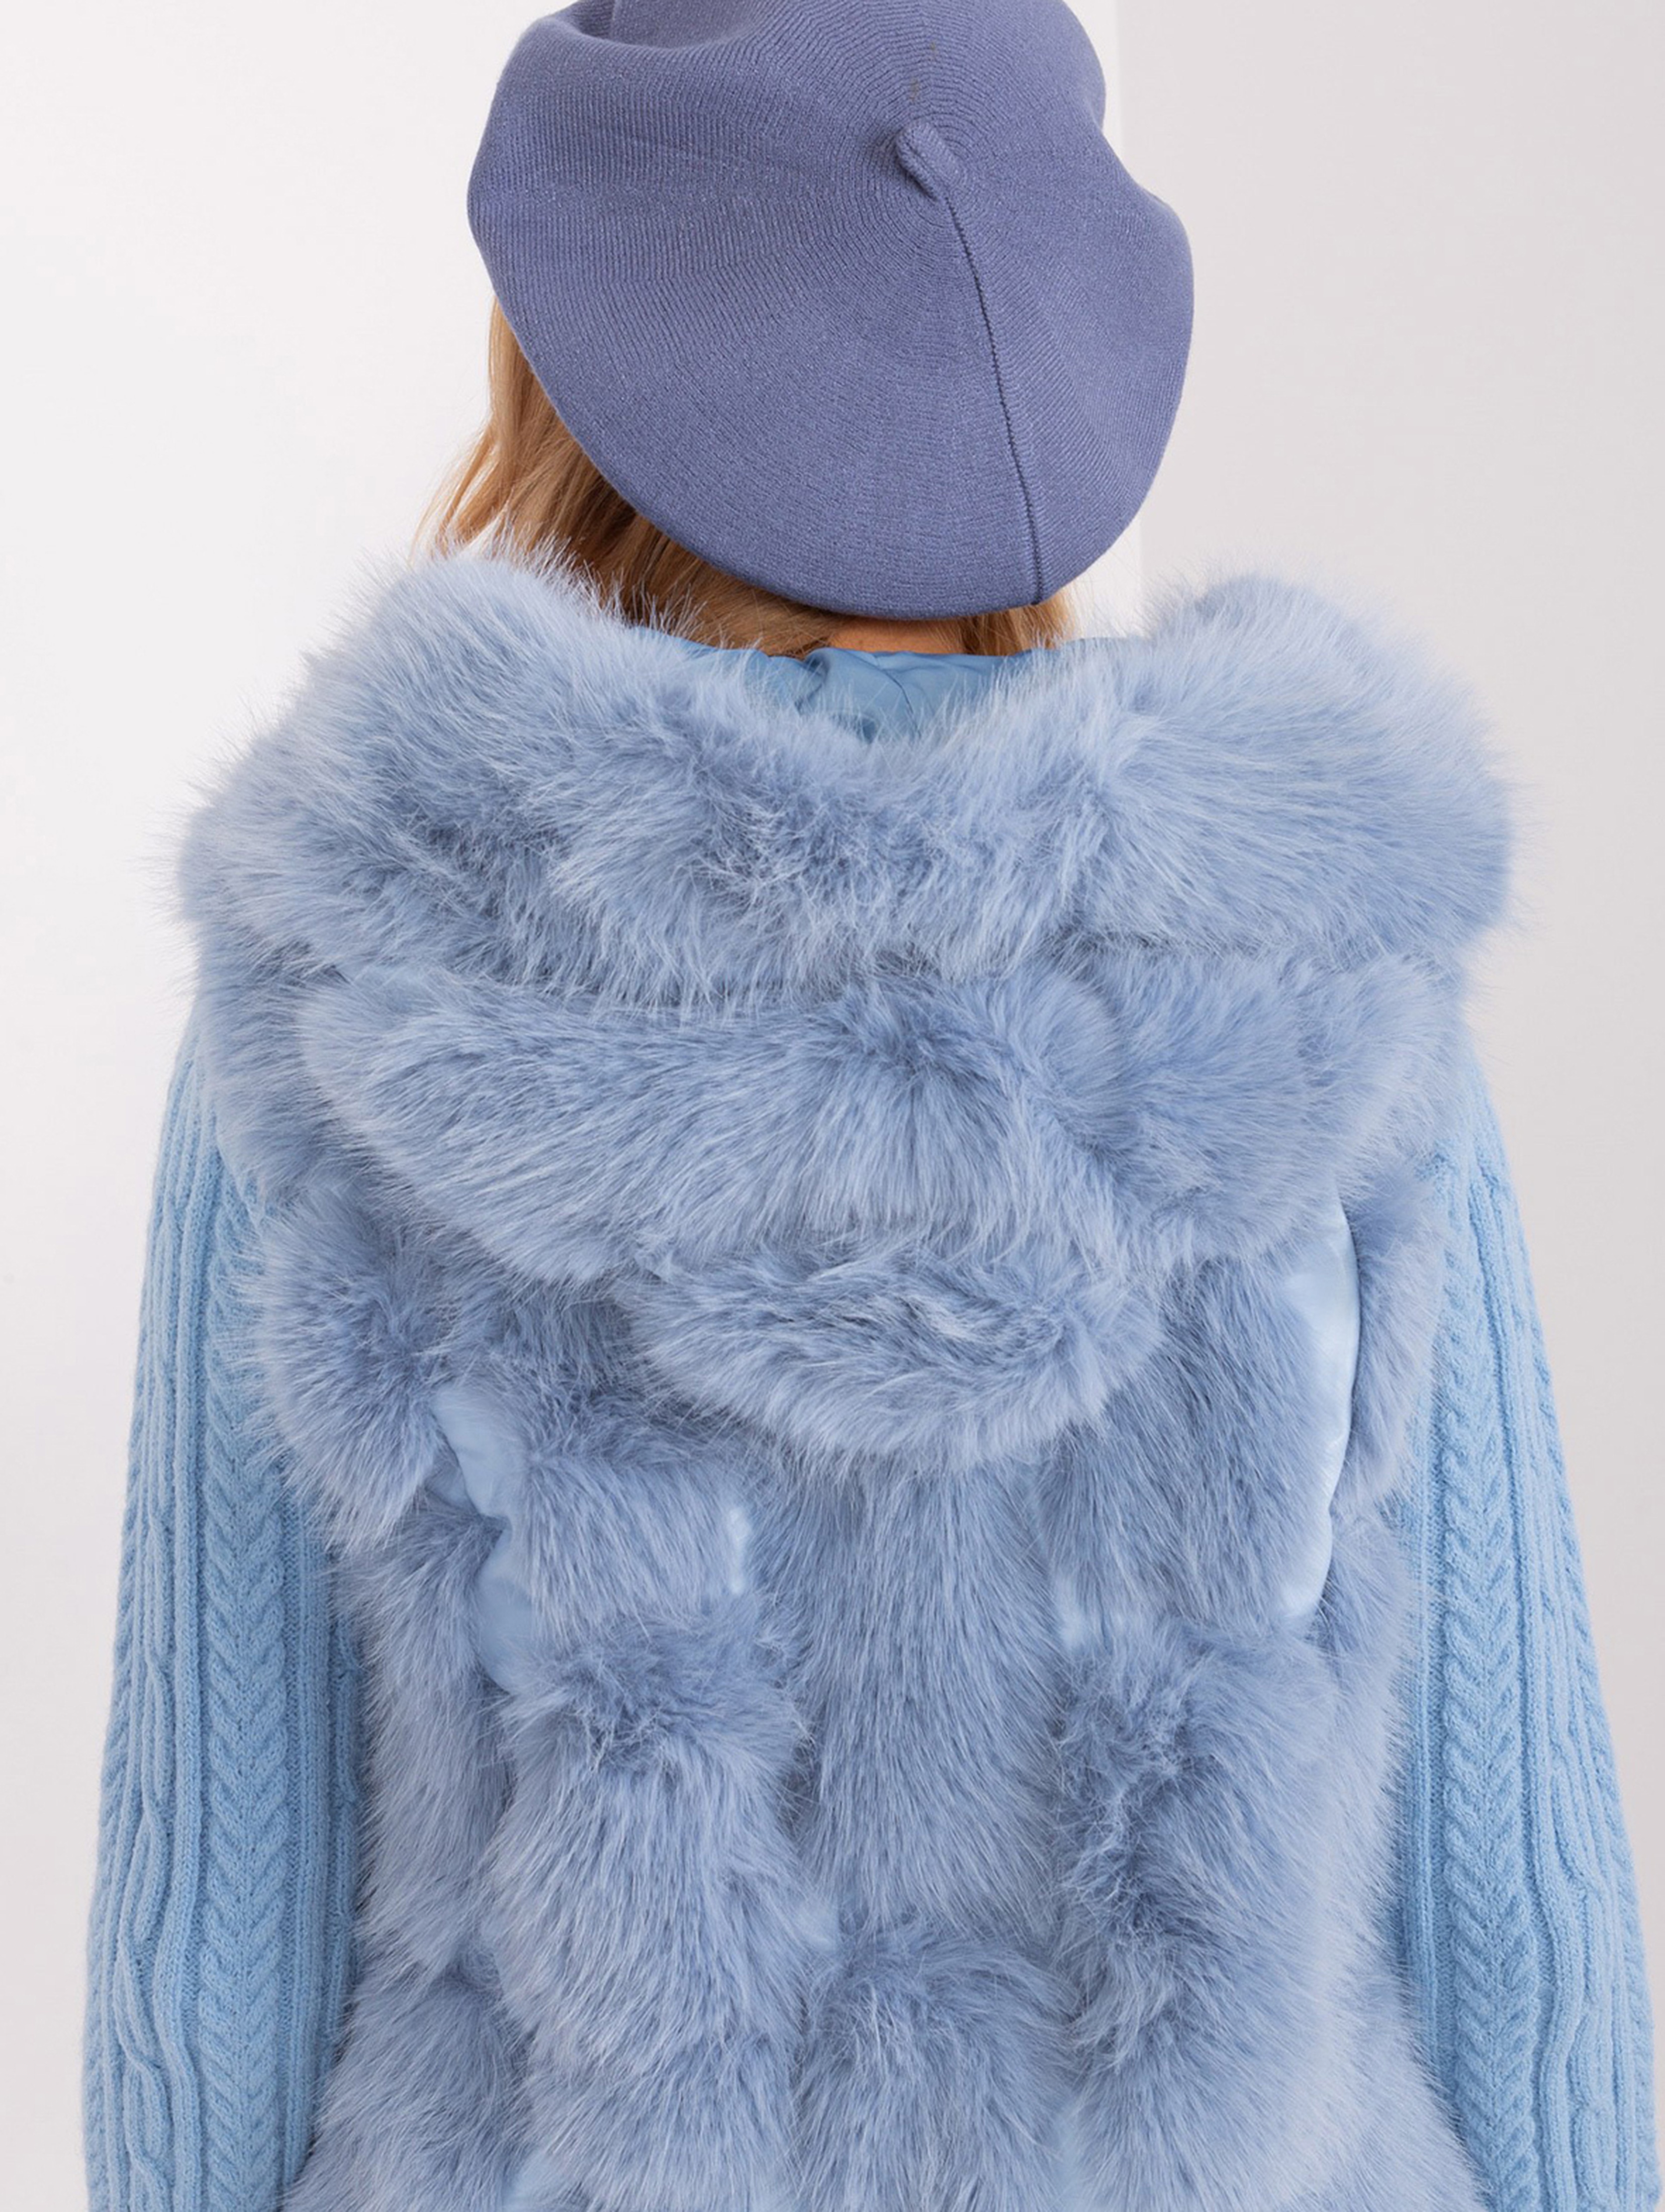 Szaro-niebieski beret z kaszmirem i bawełną